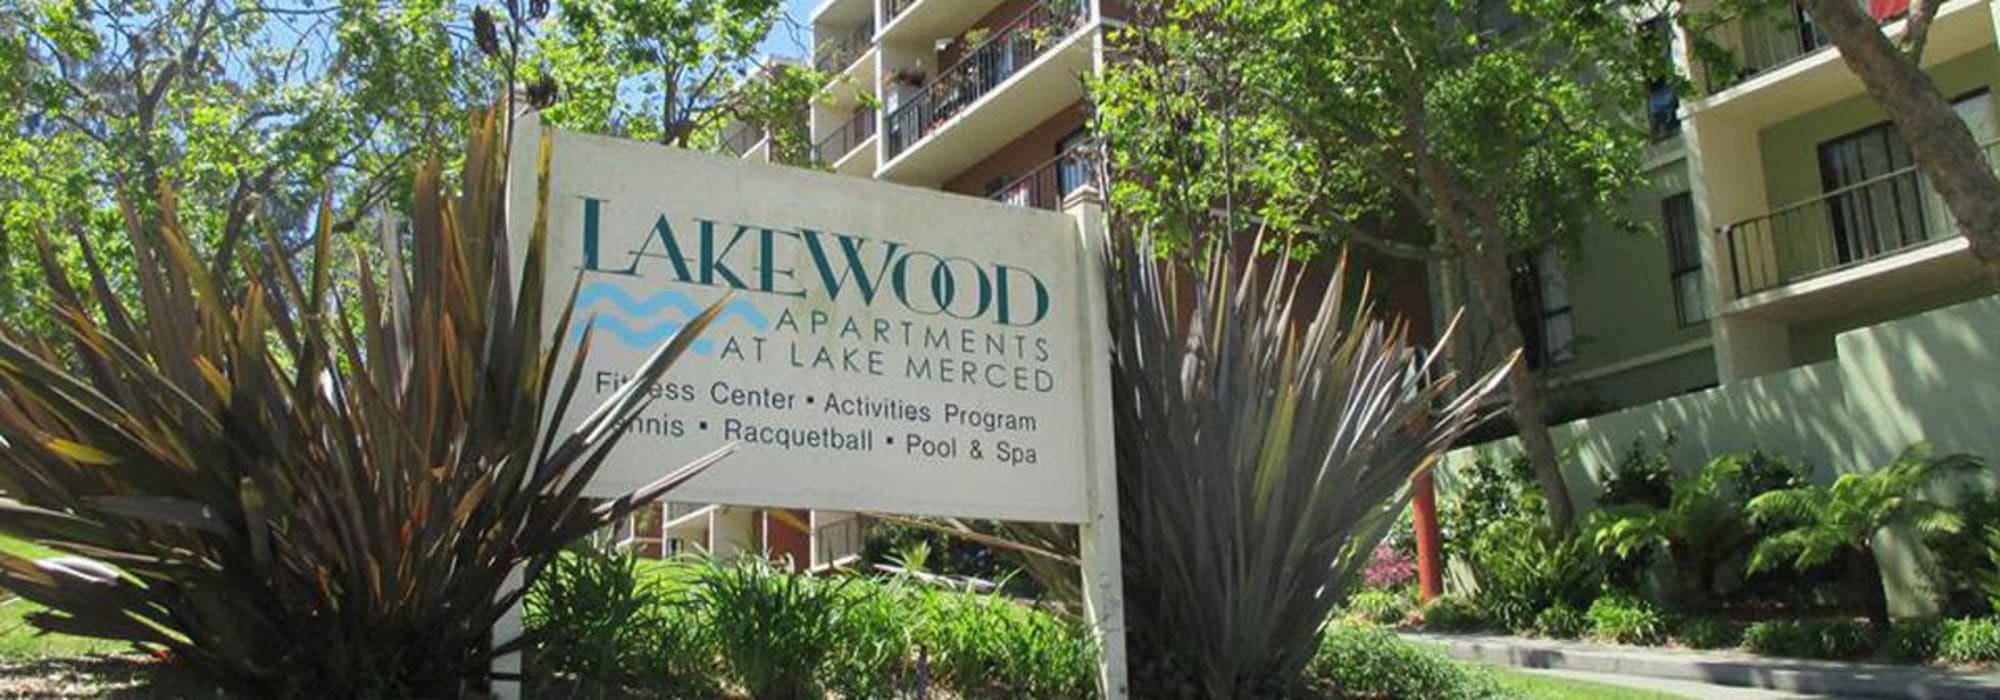 Exterior sign at Lakewood Apartments at Lake Merced in San Francisco, California